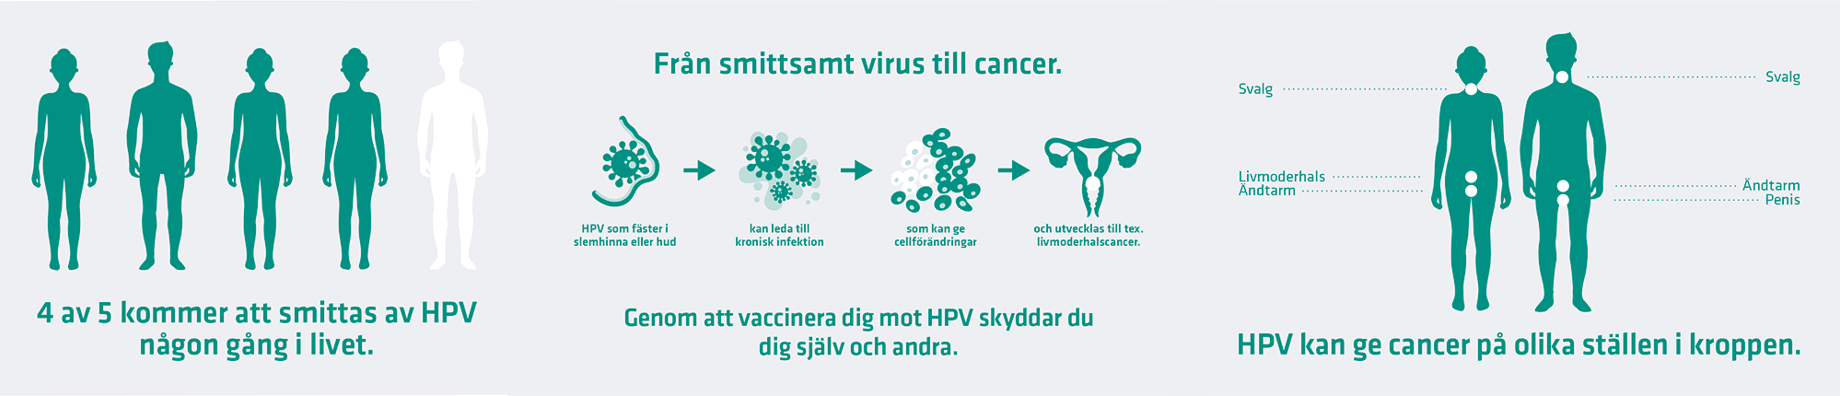 4 av 5 kommer att smittas av HPV någon gång i livet. Genom att vaccinera dig skyddar du dig själv och andra. HPV kan ge cancer på olika ställen i kroppen.